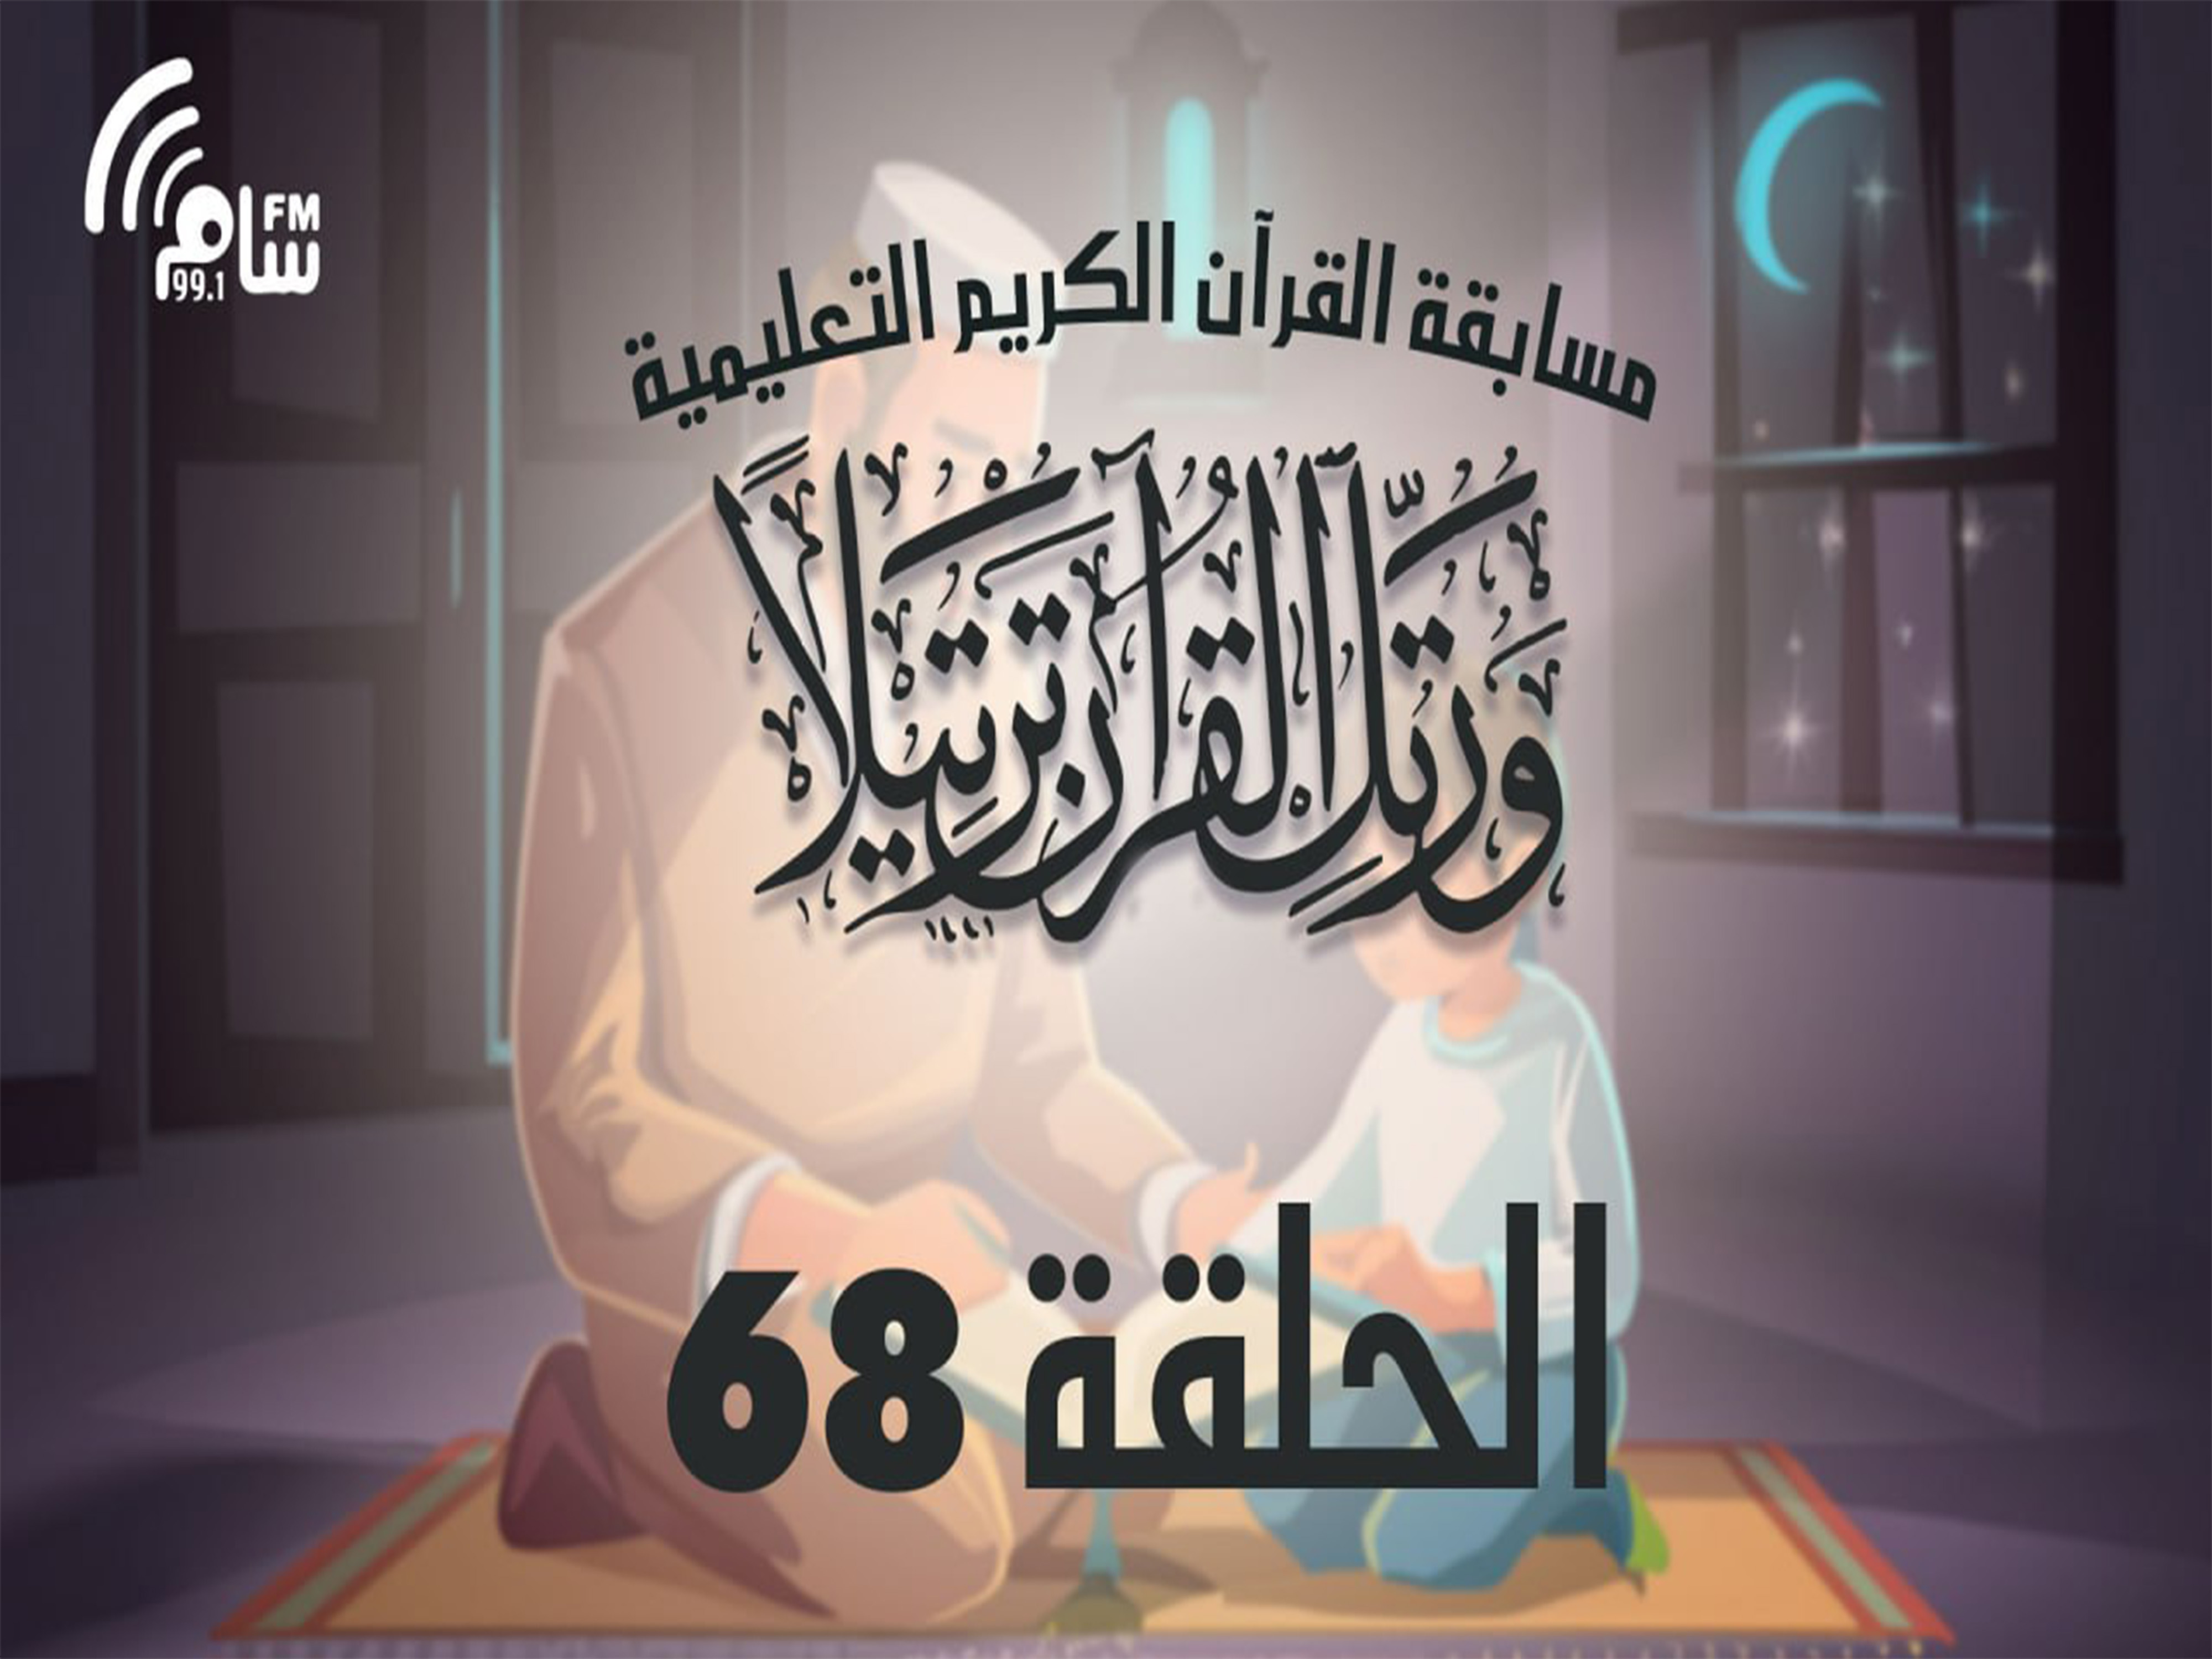 مسابقة القرآن الكريم الحلقة 68 انتاج اذاعة اسام اف ام